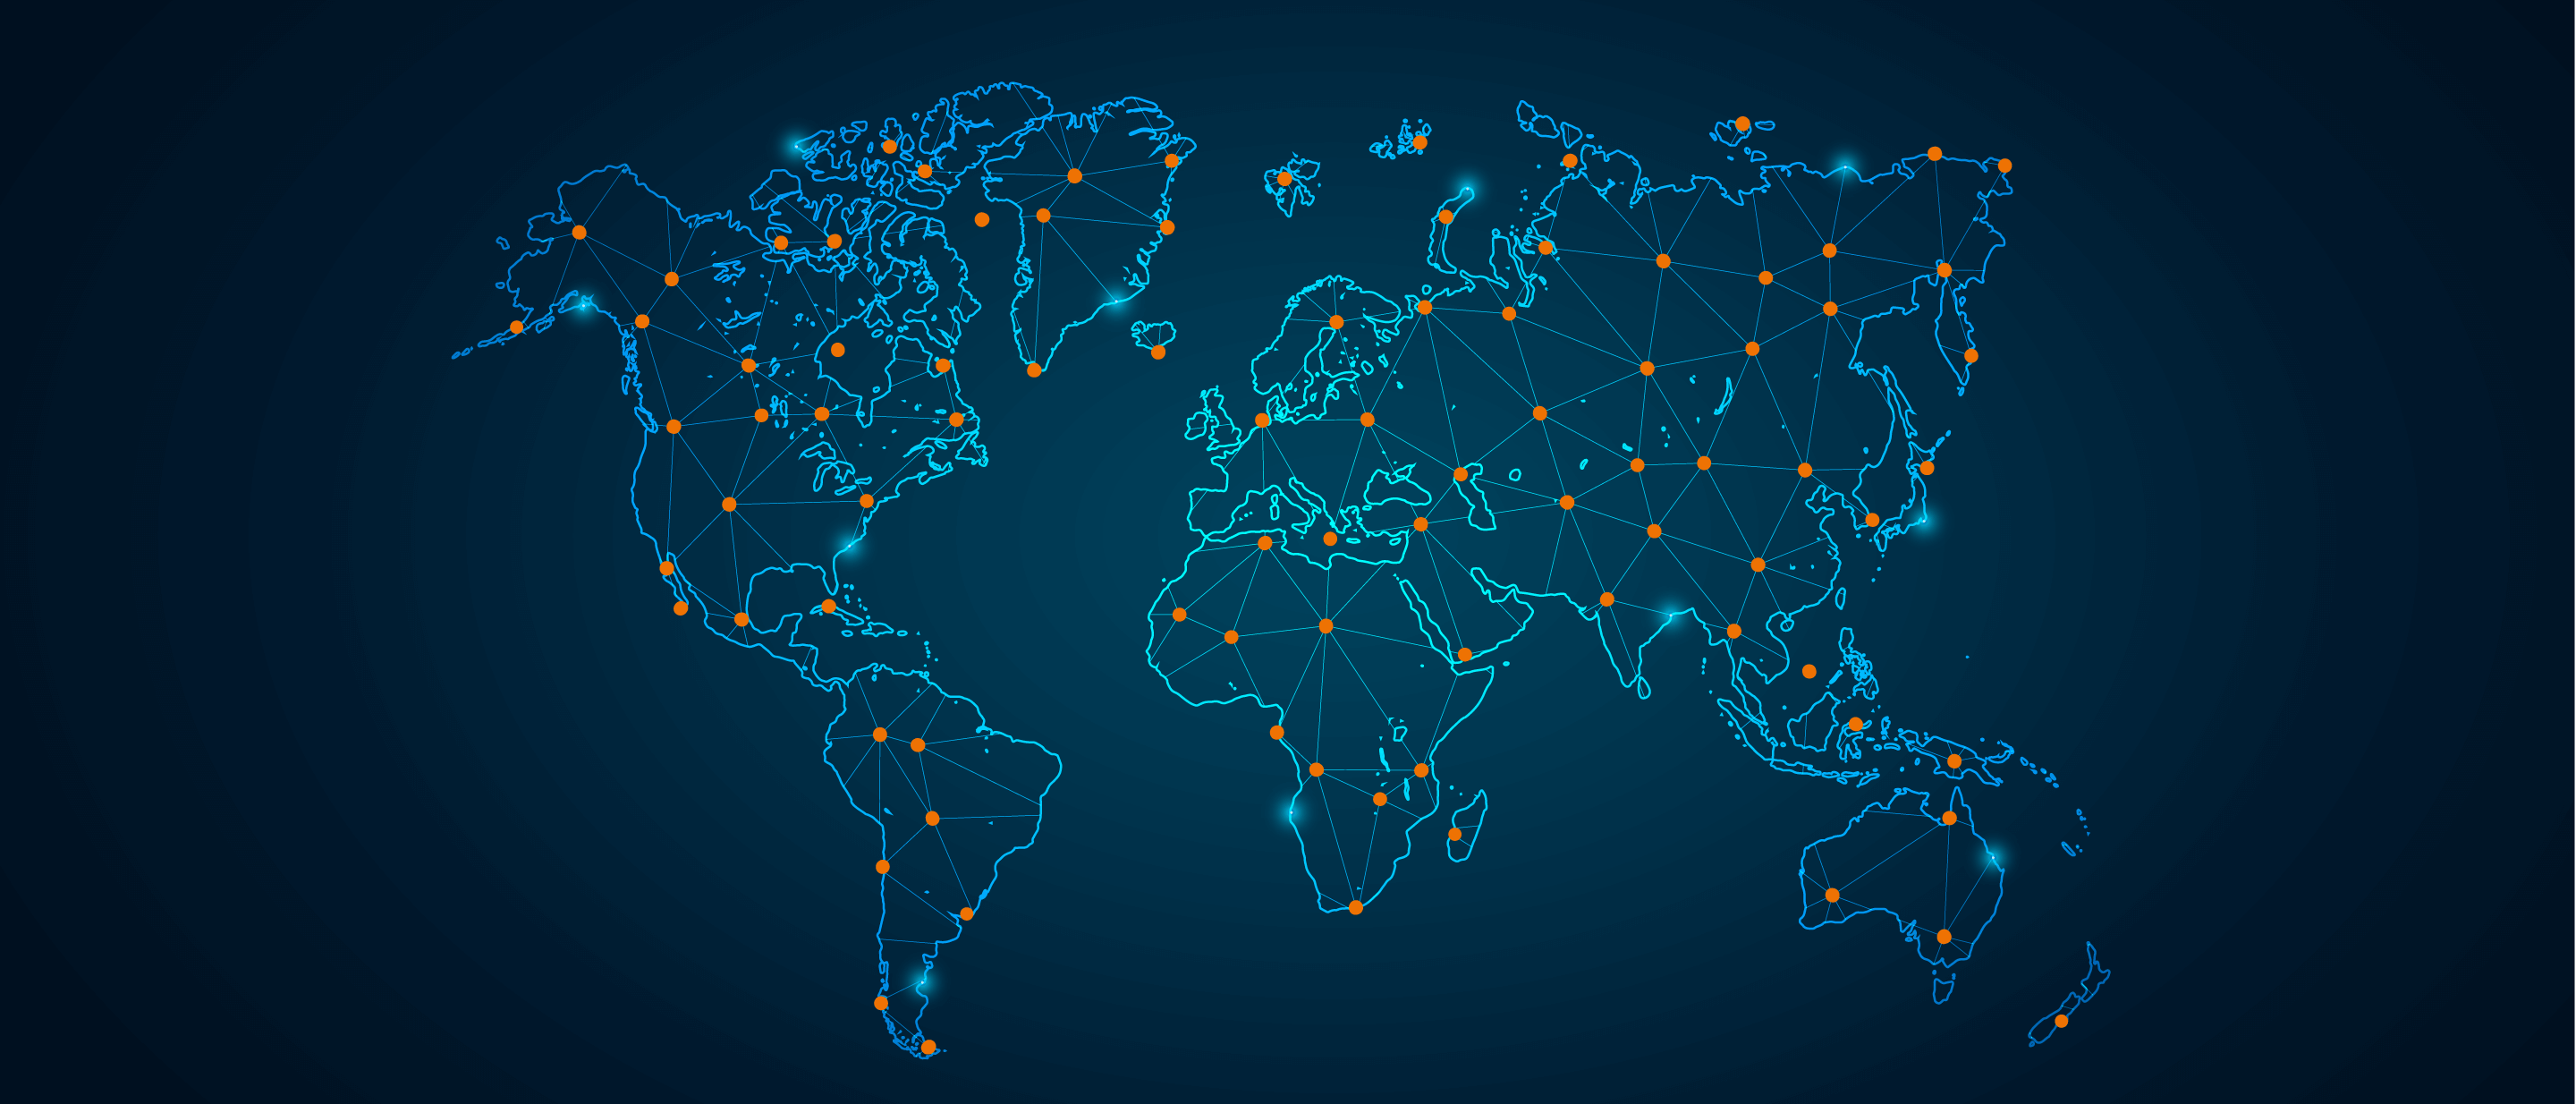 Weltkarte mit Netzen und Verbindungen zwischen allen Kontinenten